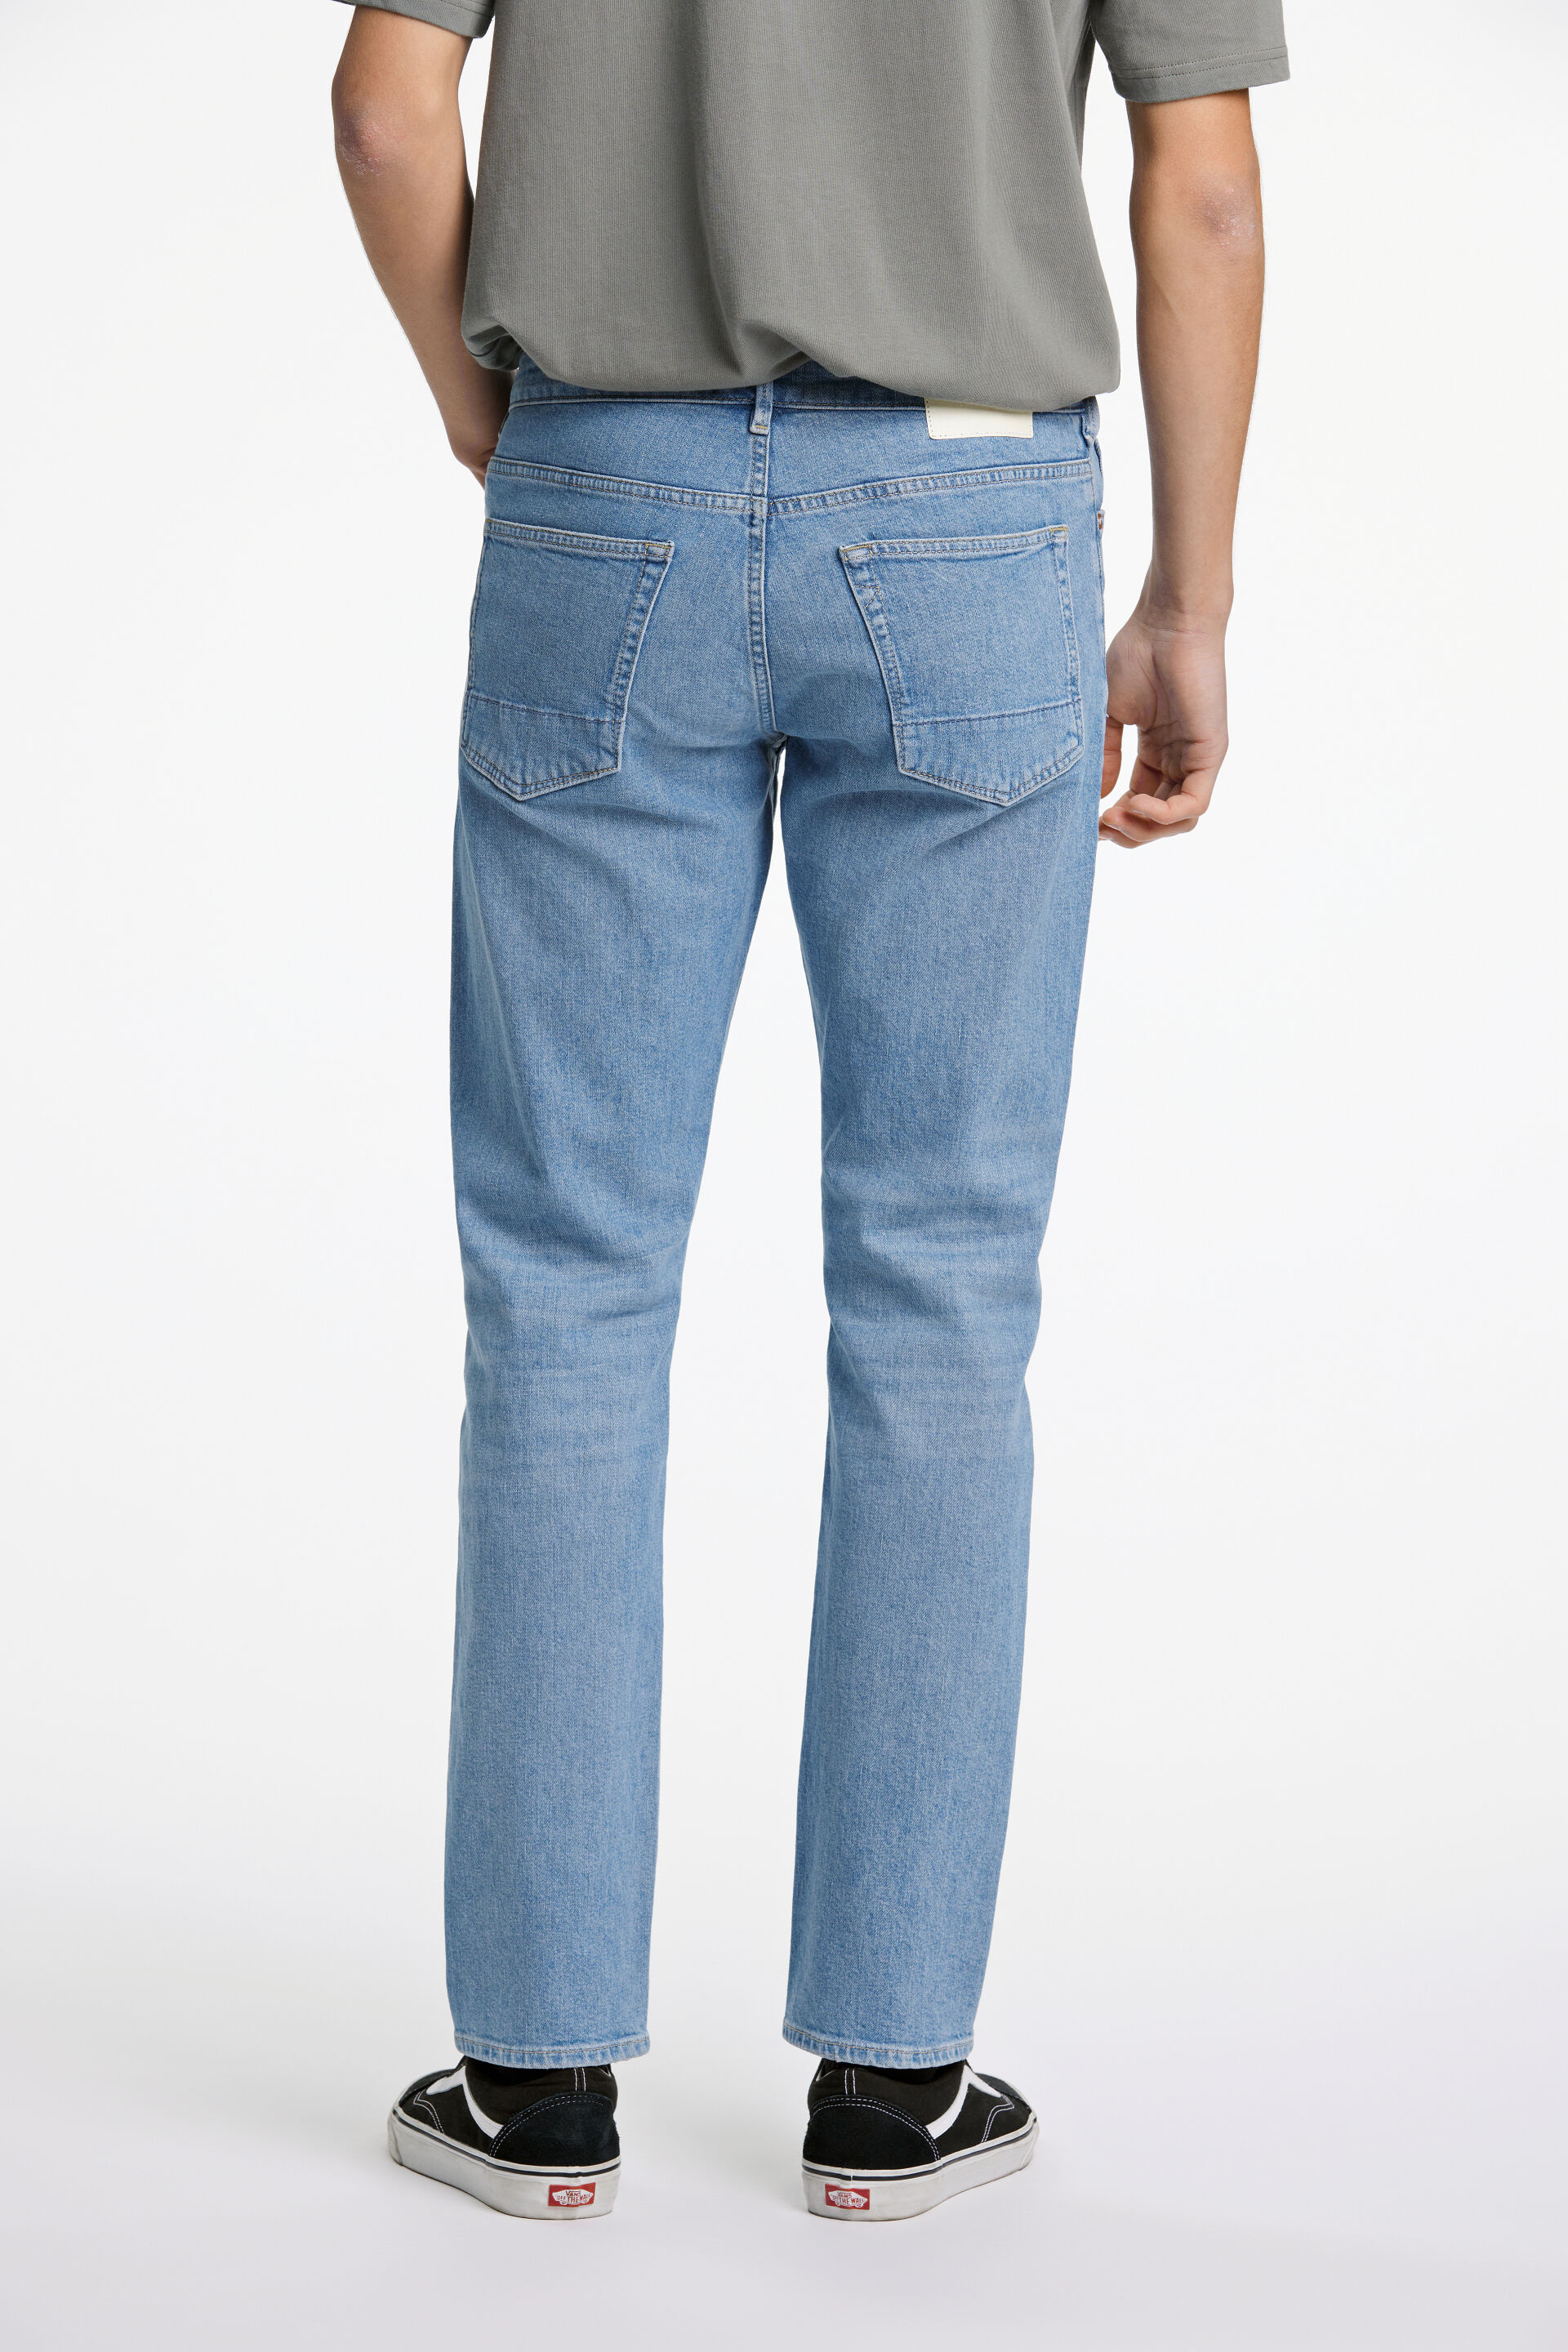 Junk de Luxe  Jeans 60-022018